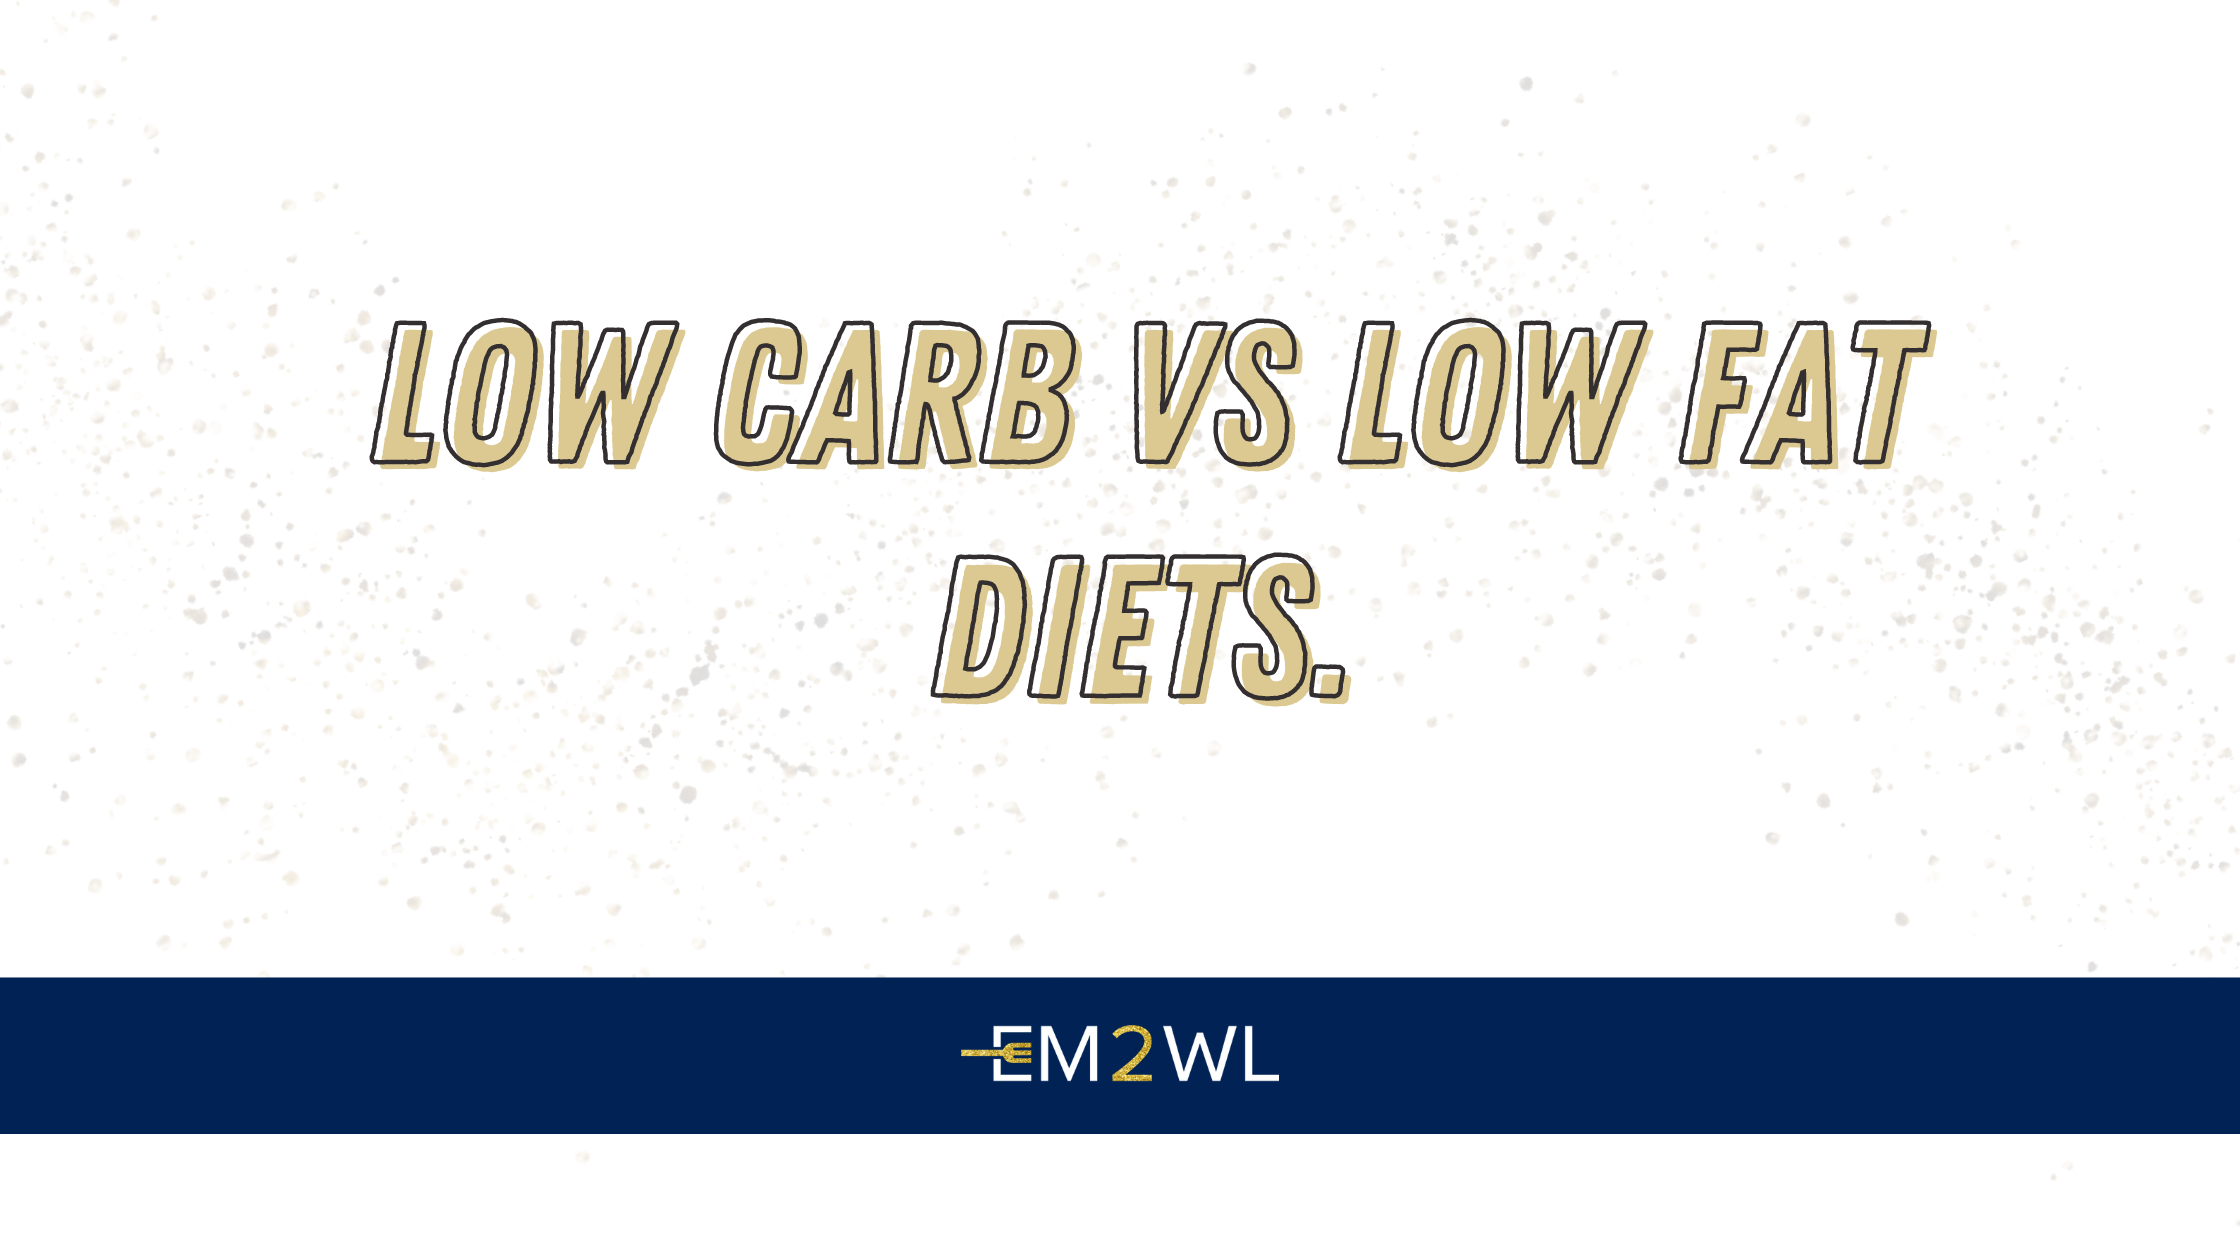 Low Carb vs. Low Fat Diets